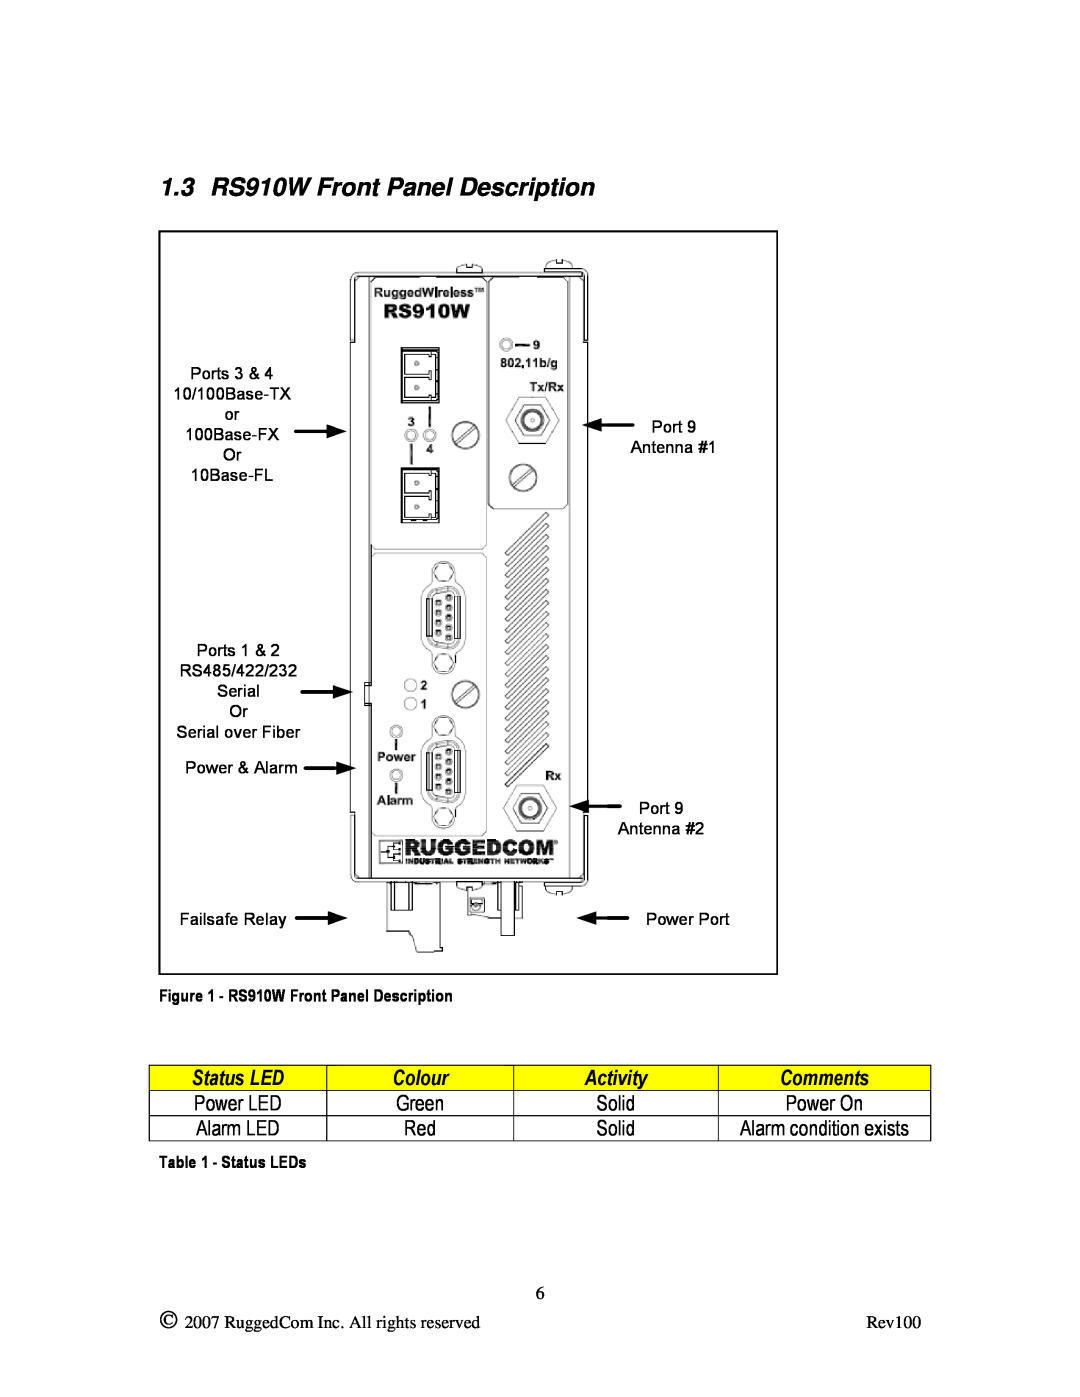 RuggedCom manual 1.3 RS910W Front Panel Description, Status LED, Colour, Activity, Comments 